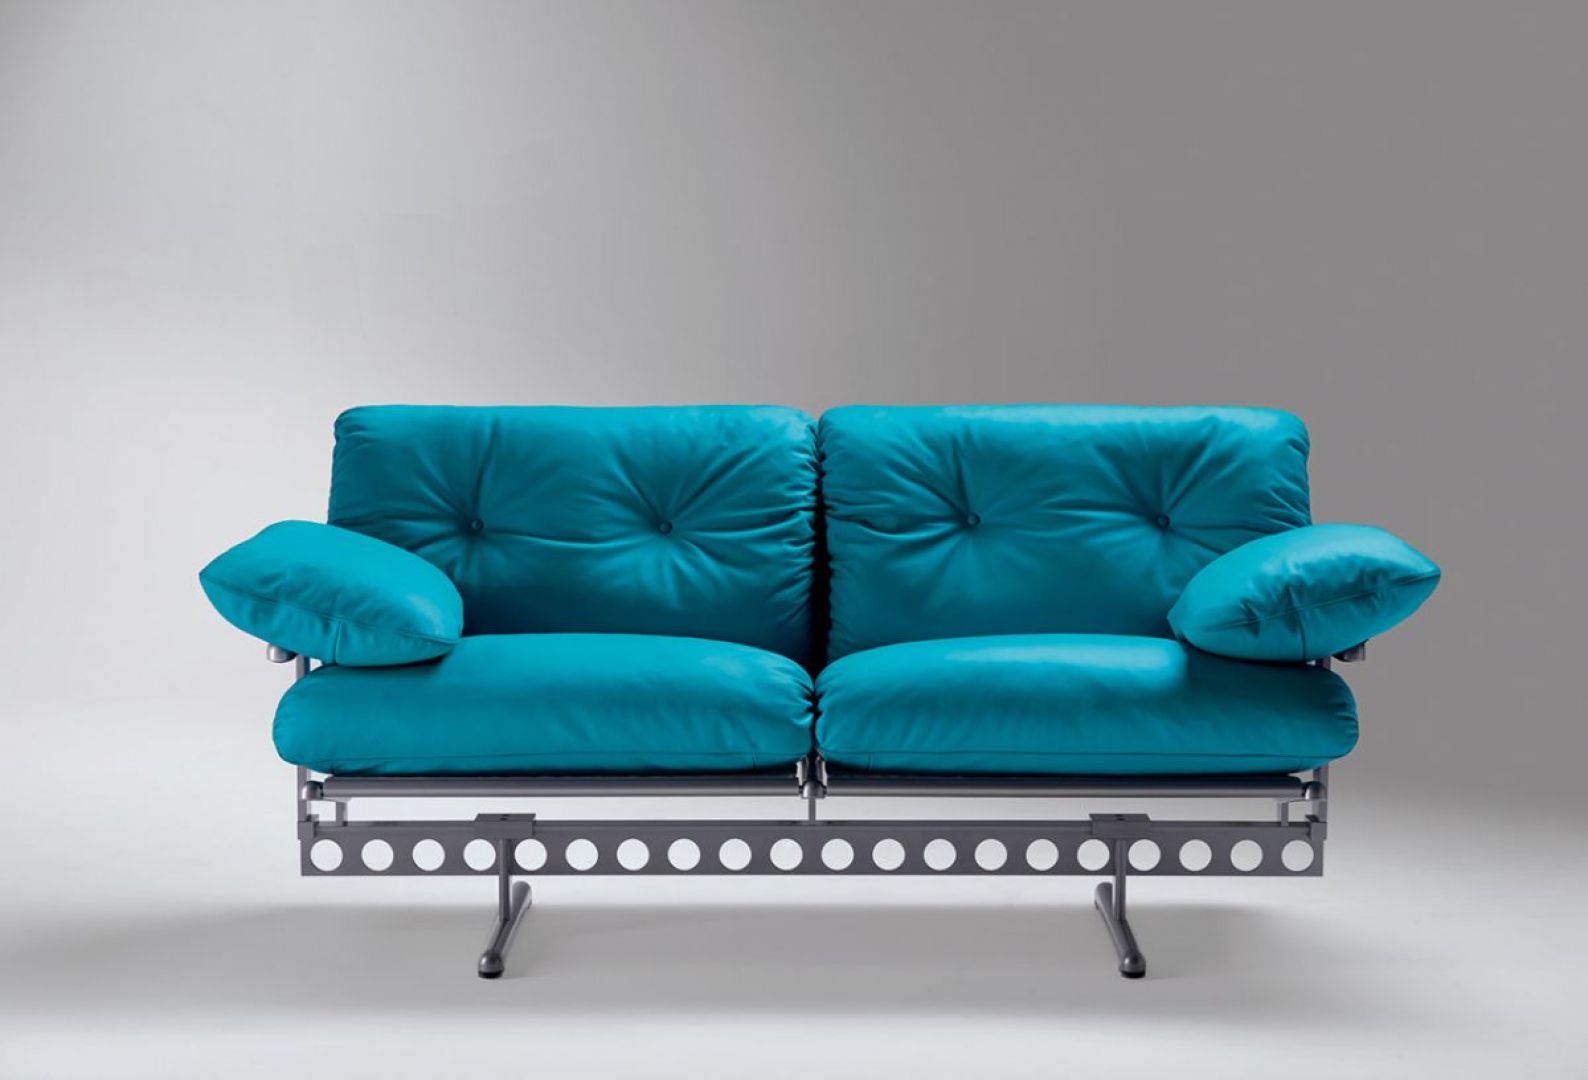 Sofa „Ouverture” włoskiej marki Poltrona Frau (projekt: Pierluigi Cerri) wspiera się na industrialnej, stalowej belce, po której można przesuwać wsporniki. Fot. Poltrona Frau